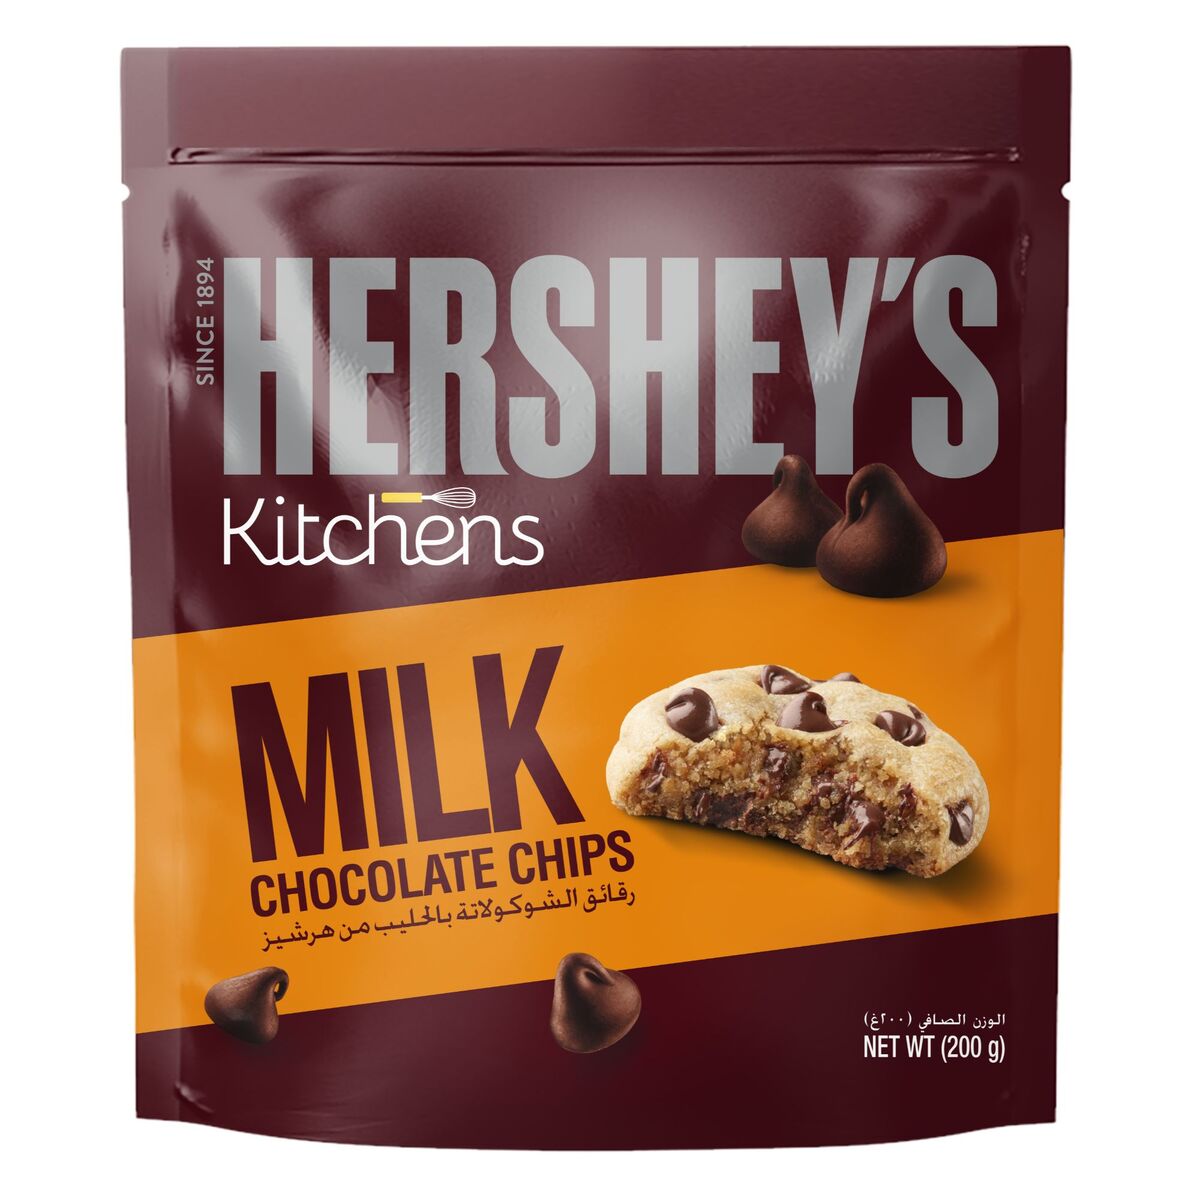 Hershey's Kitchens Milk Chocolate Chips 200 g